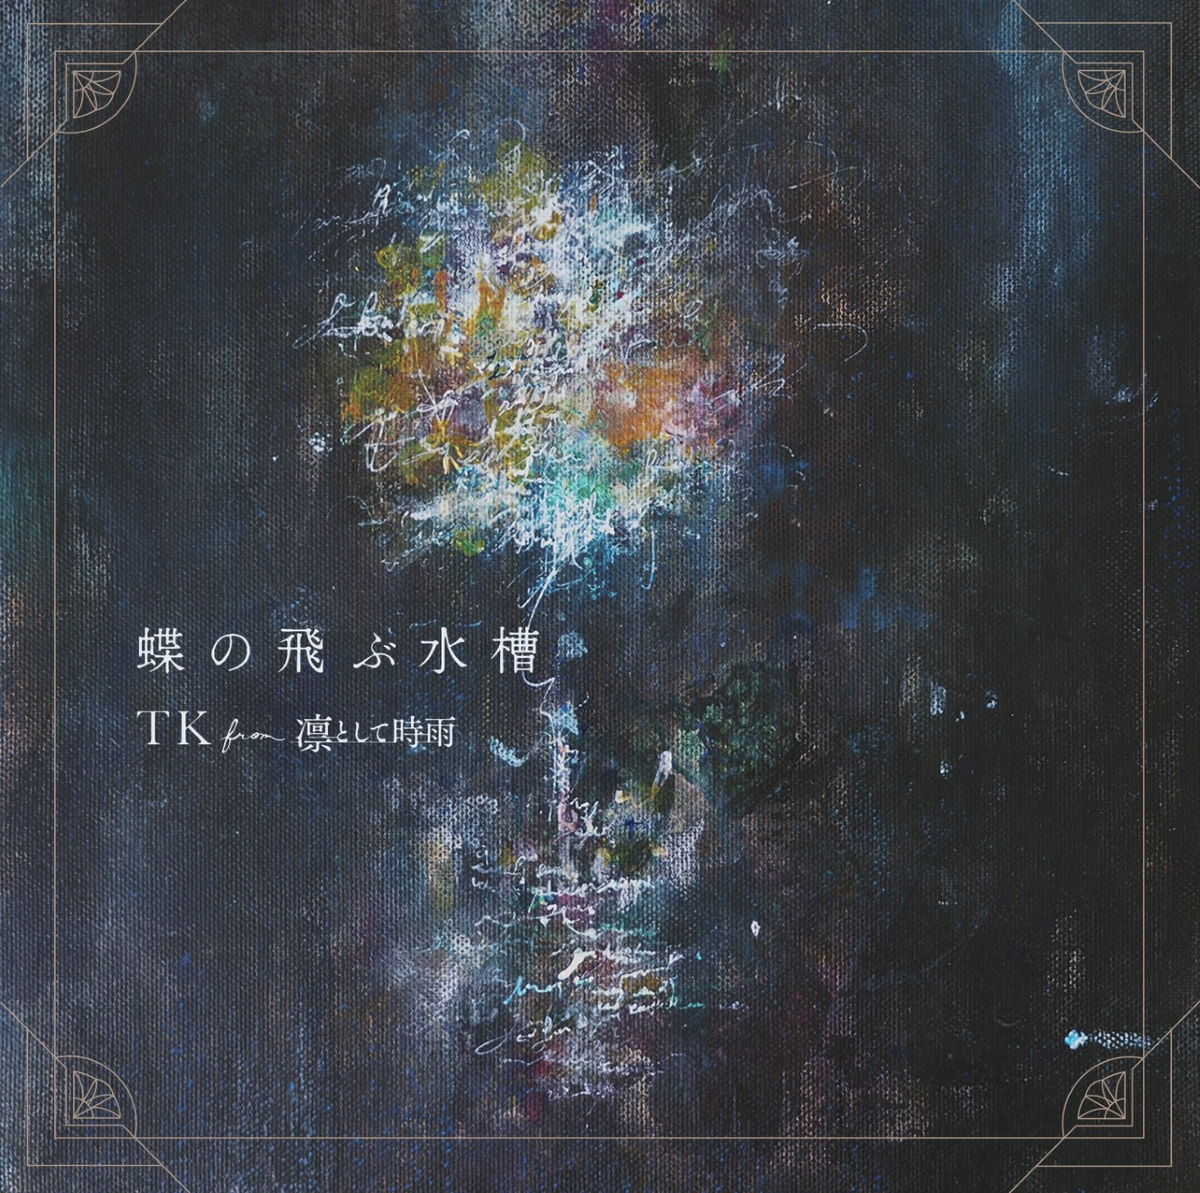 Cover art for『TK from Ling tosite sigure - Chou no Tobu Suisou』from the release『Chou no Tobu Suisou』